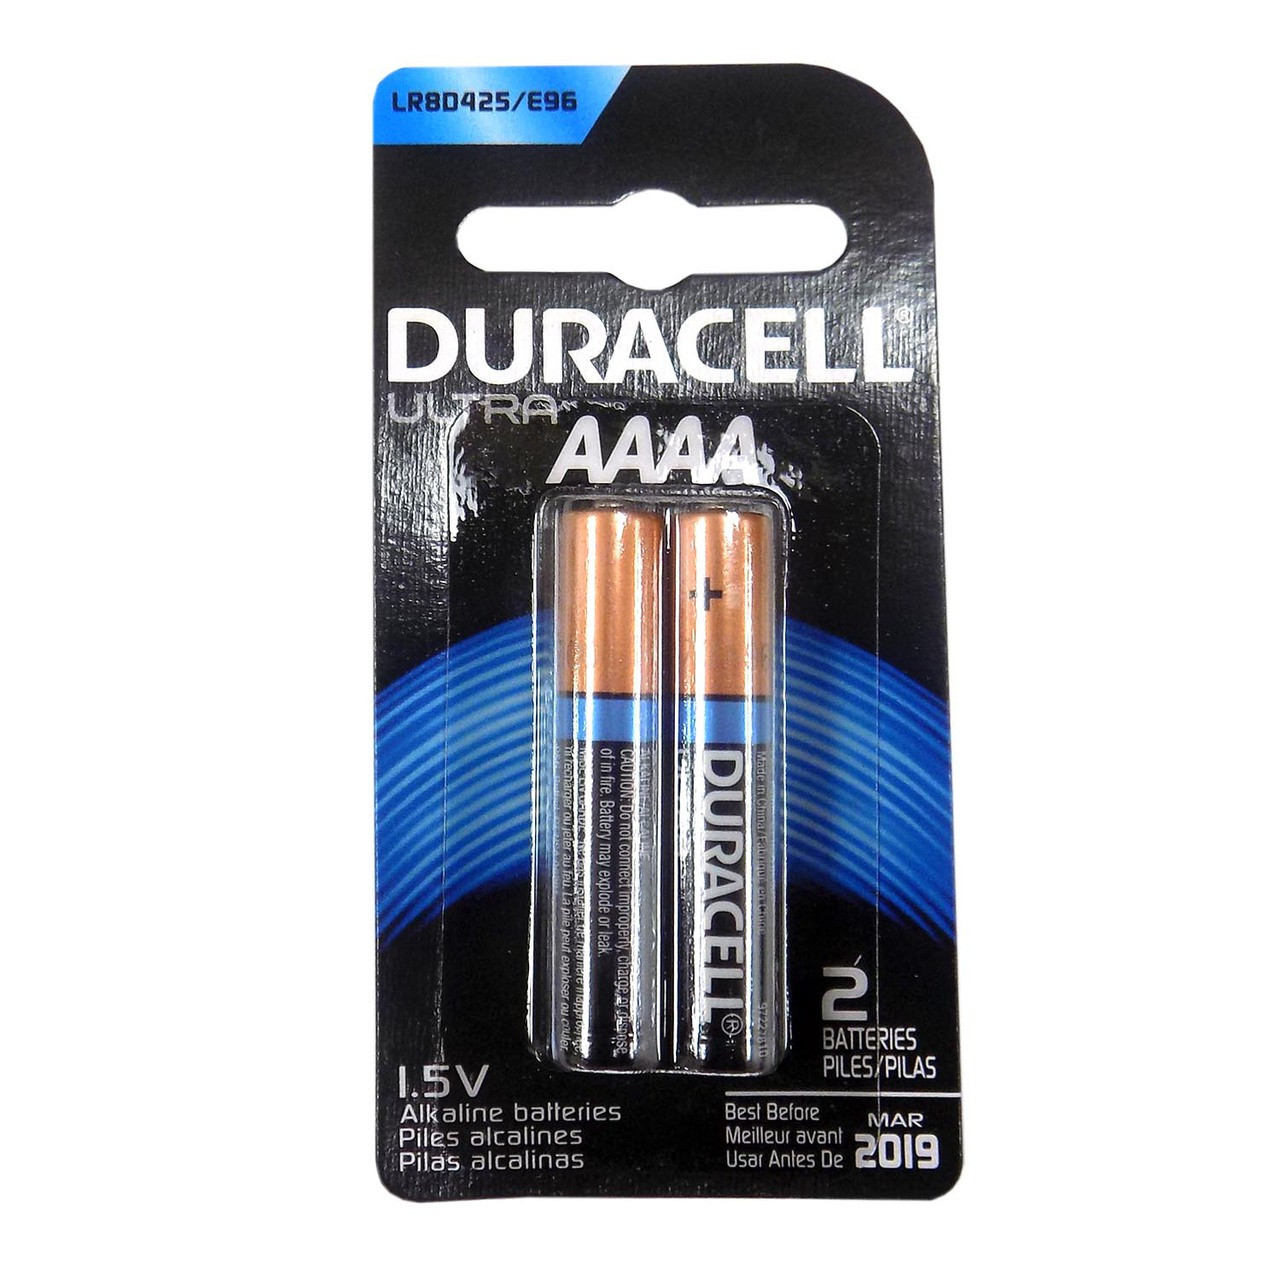 aaaa batteries